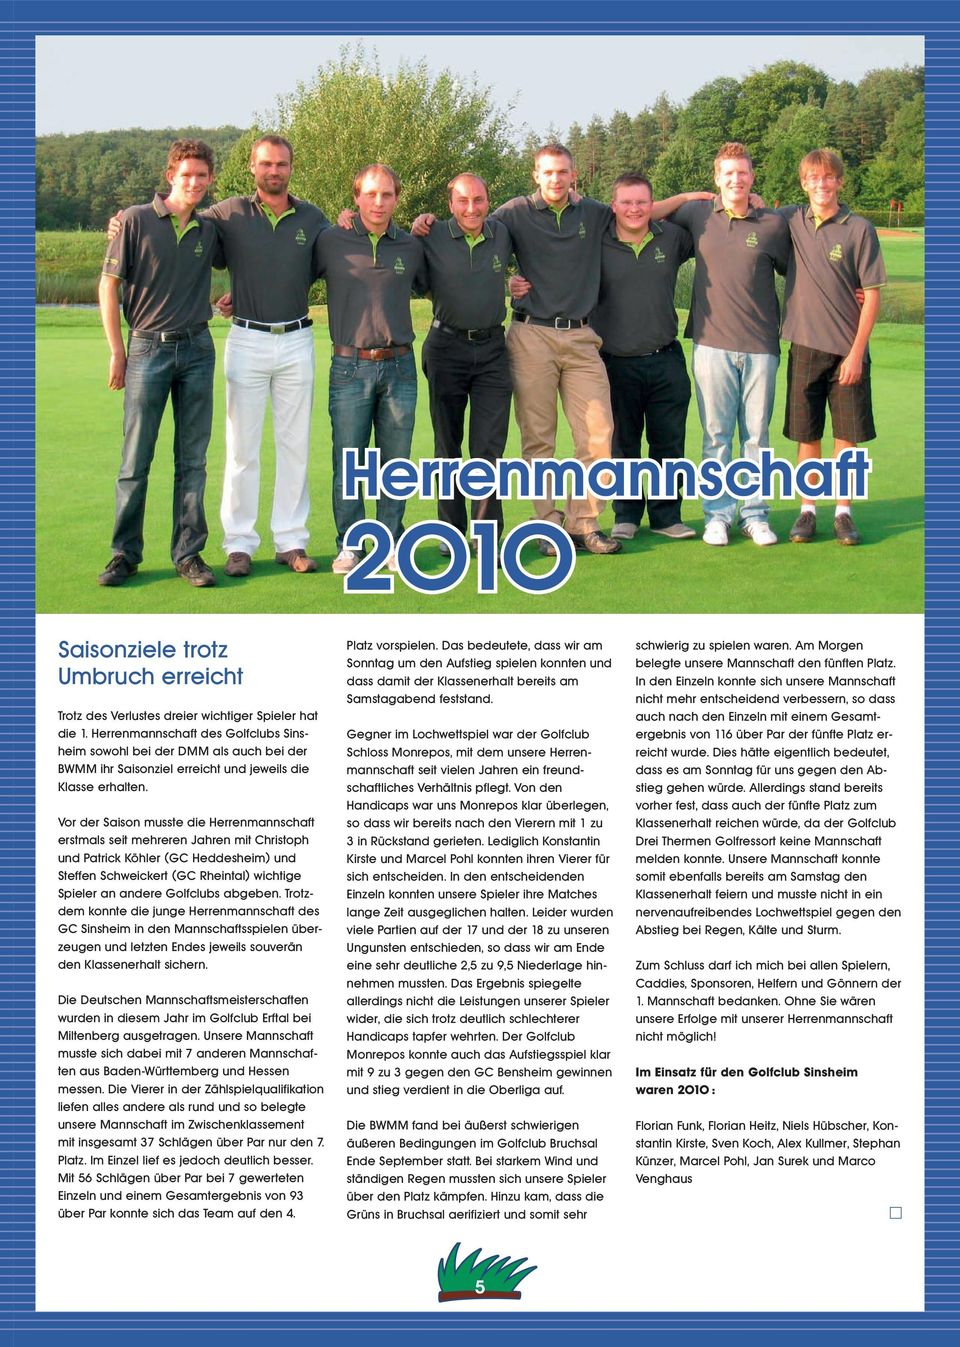 Vor der Saison musste die Herrenmannschaft erstmals seit mehreren Jahren mit Christoph und Patrick Köhler (GC Heddesheim) und Steffen Schweickert (GC Rheintal) wichtige Spieler an andere Golfclubs